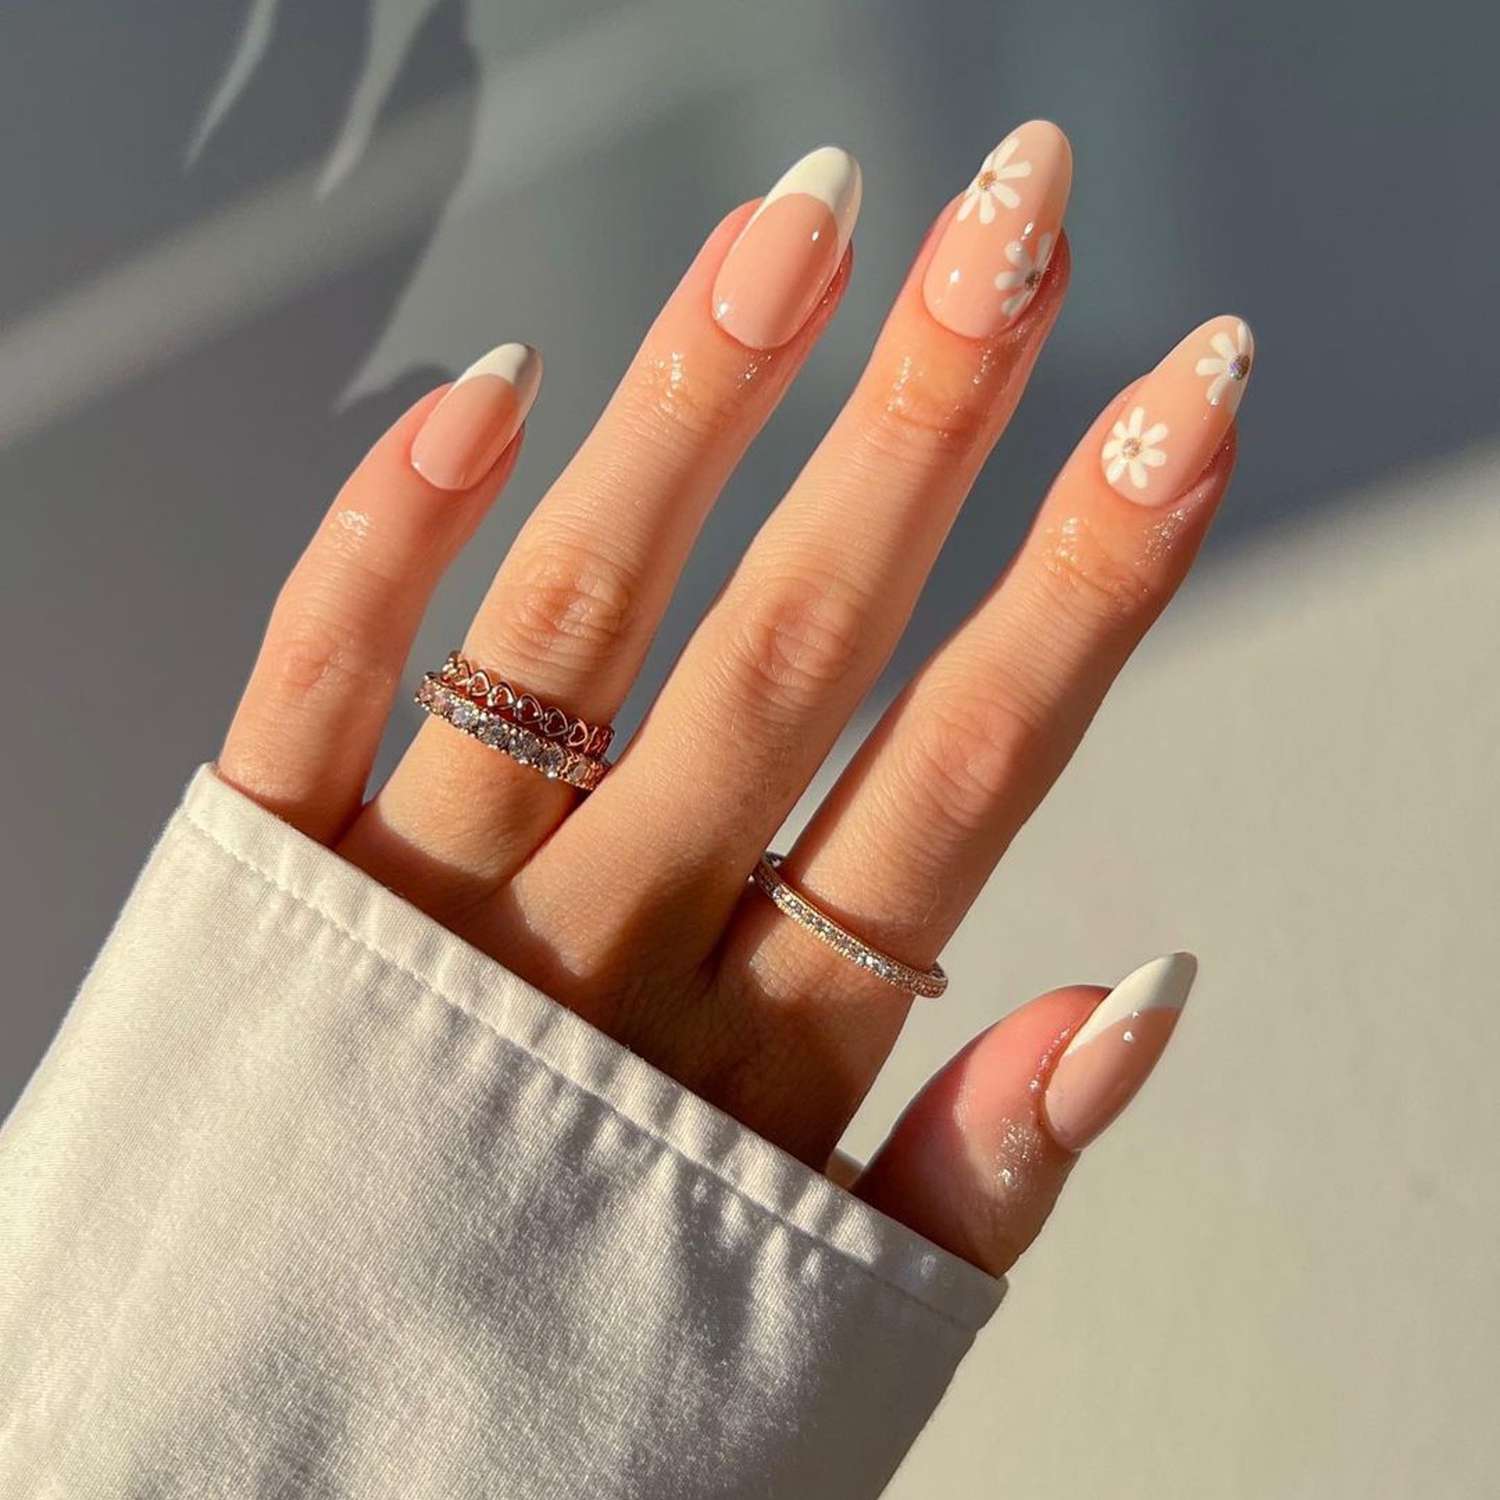 daisy nails